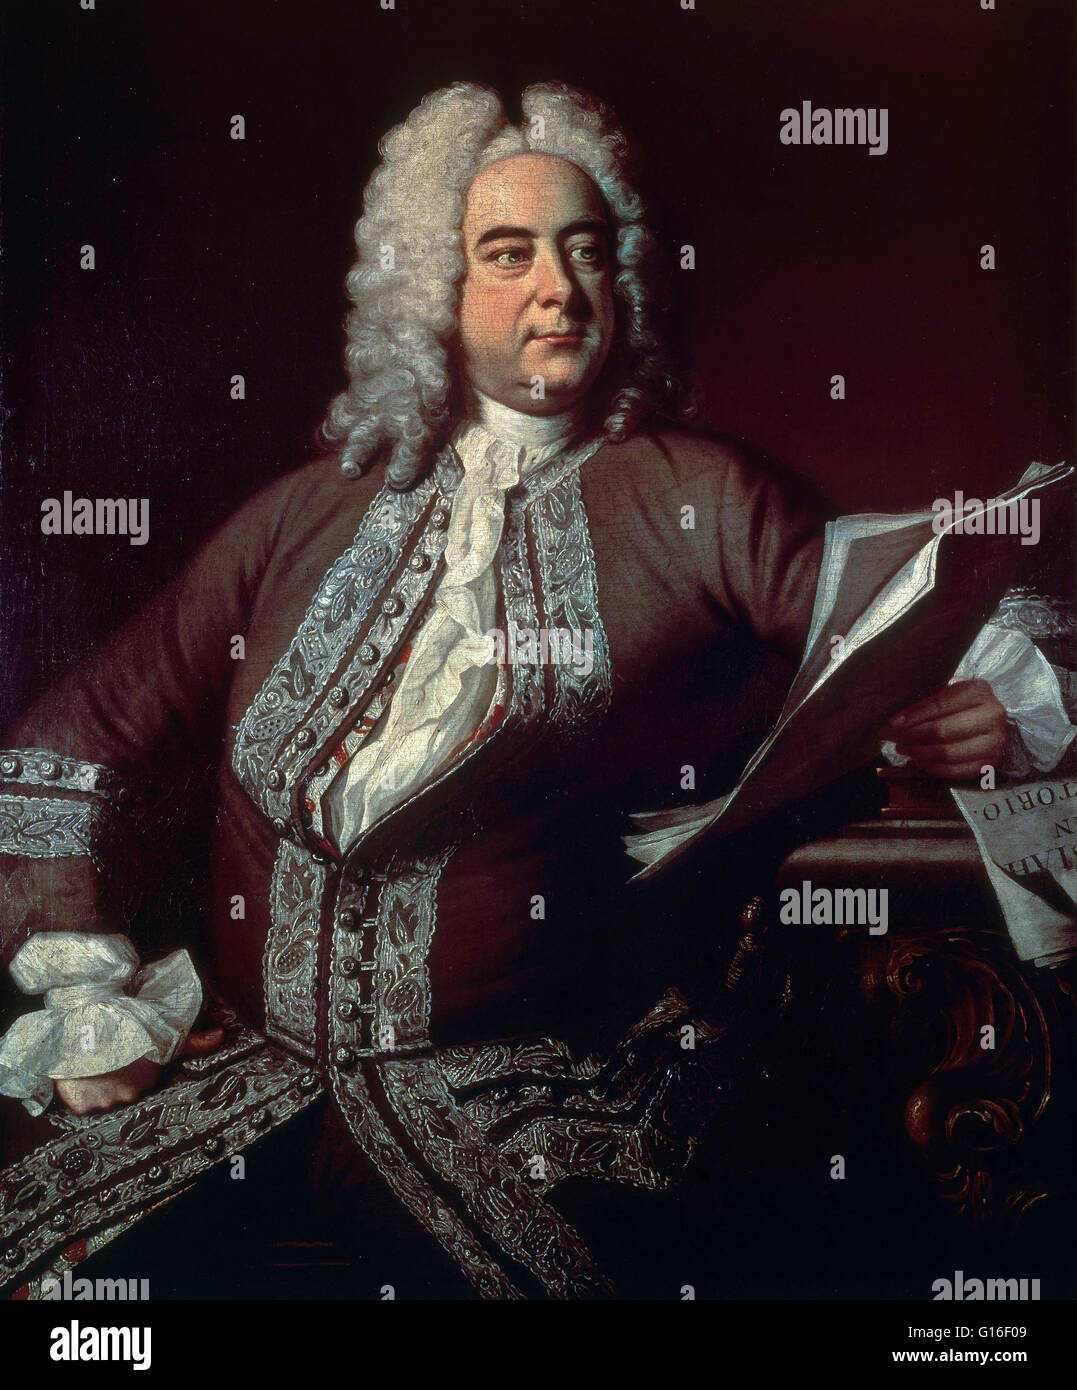 Portrait de Haendel en peignant par T., 1749 Hudson. George Frideric Handel (5 mars 1685 - 14 avril 1759) était un compositeur baroque anglo-allemande, célèbre pour ses opéras, oratorios, anthems et orgue concertos. Il a reçu une formation musicale critique à Halle, H Banque D'Images